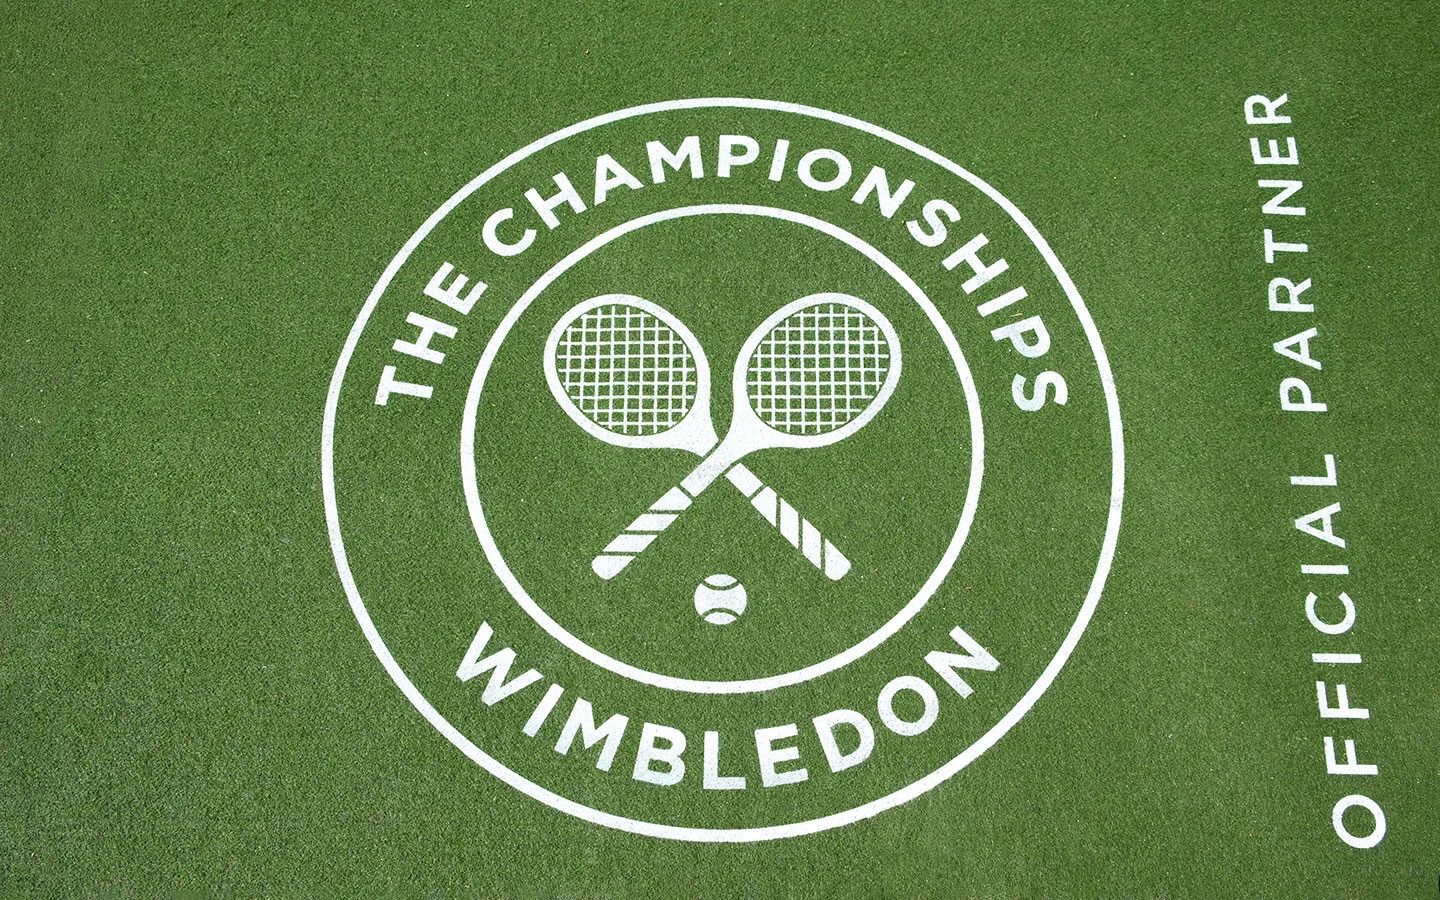 Wimbledon sign on the grass